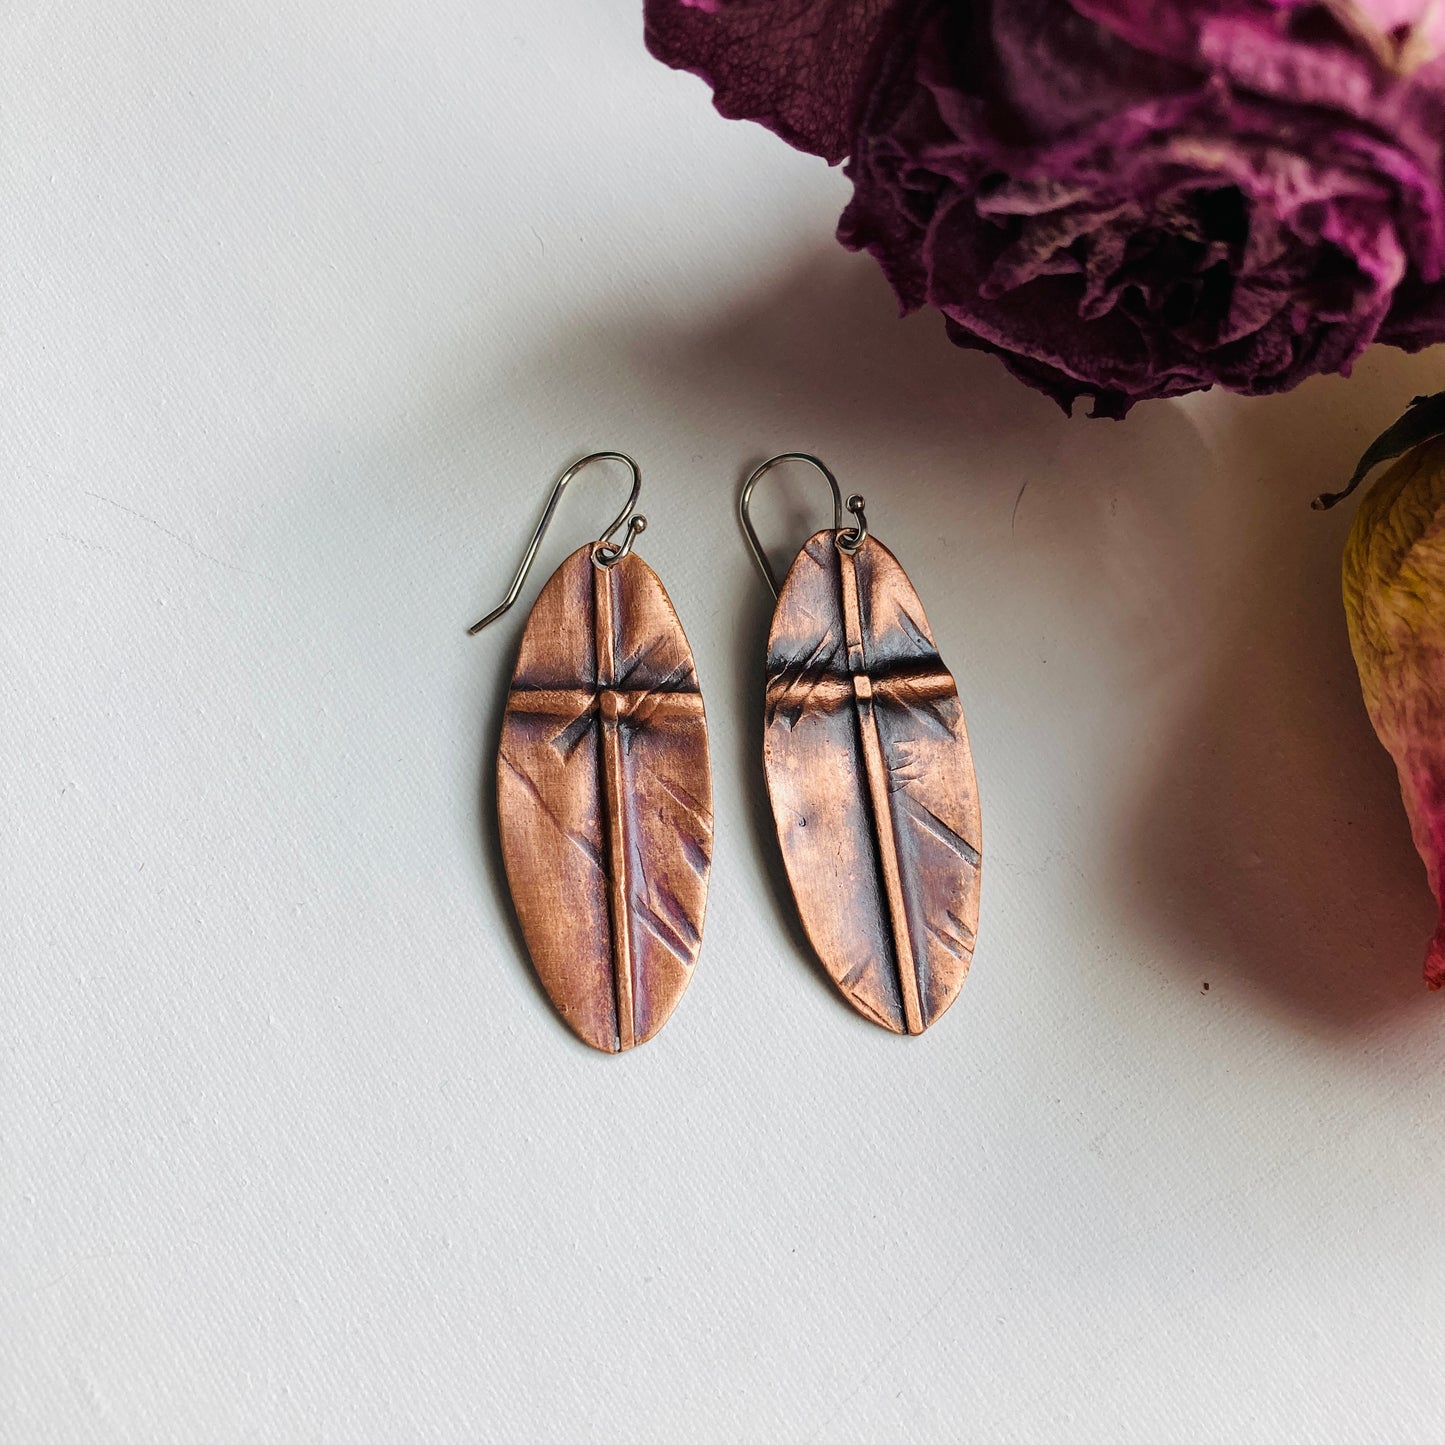 Oval Cross Fold Formed Copper Earrings